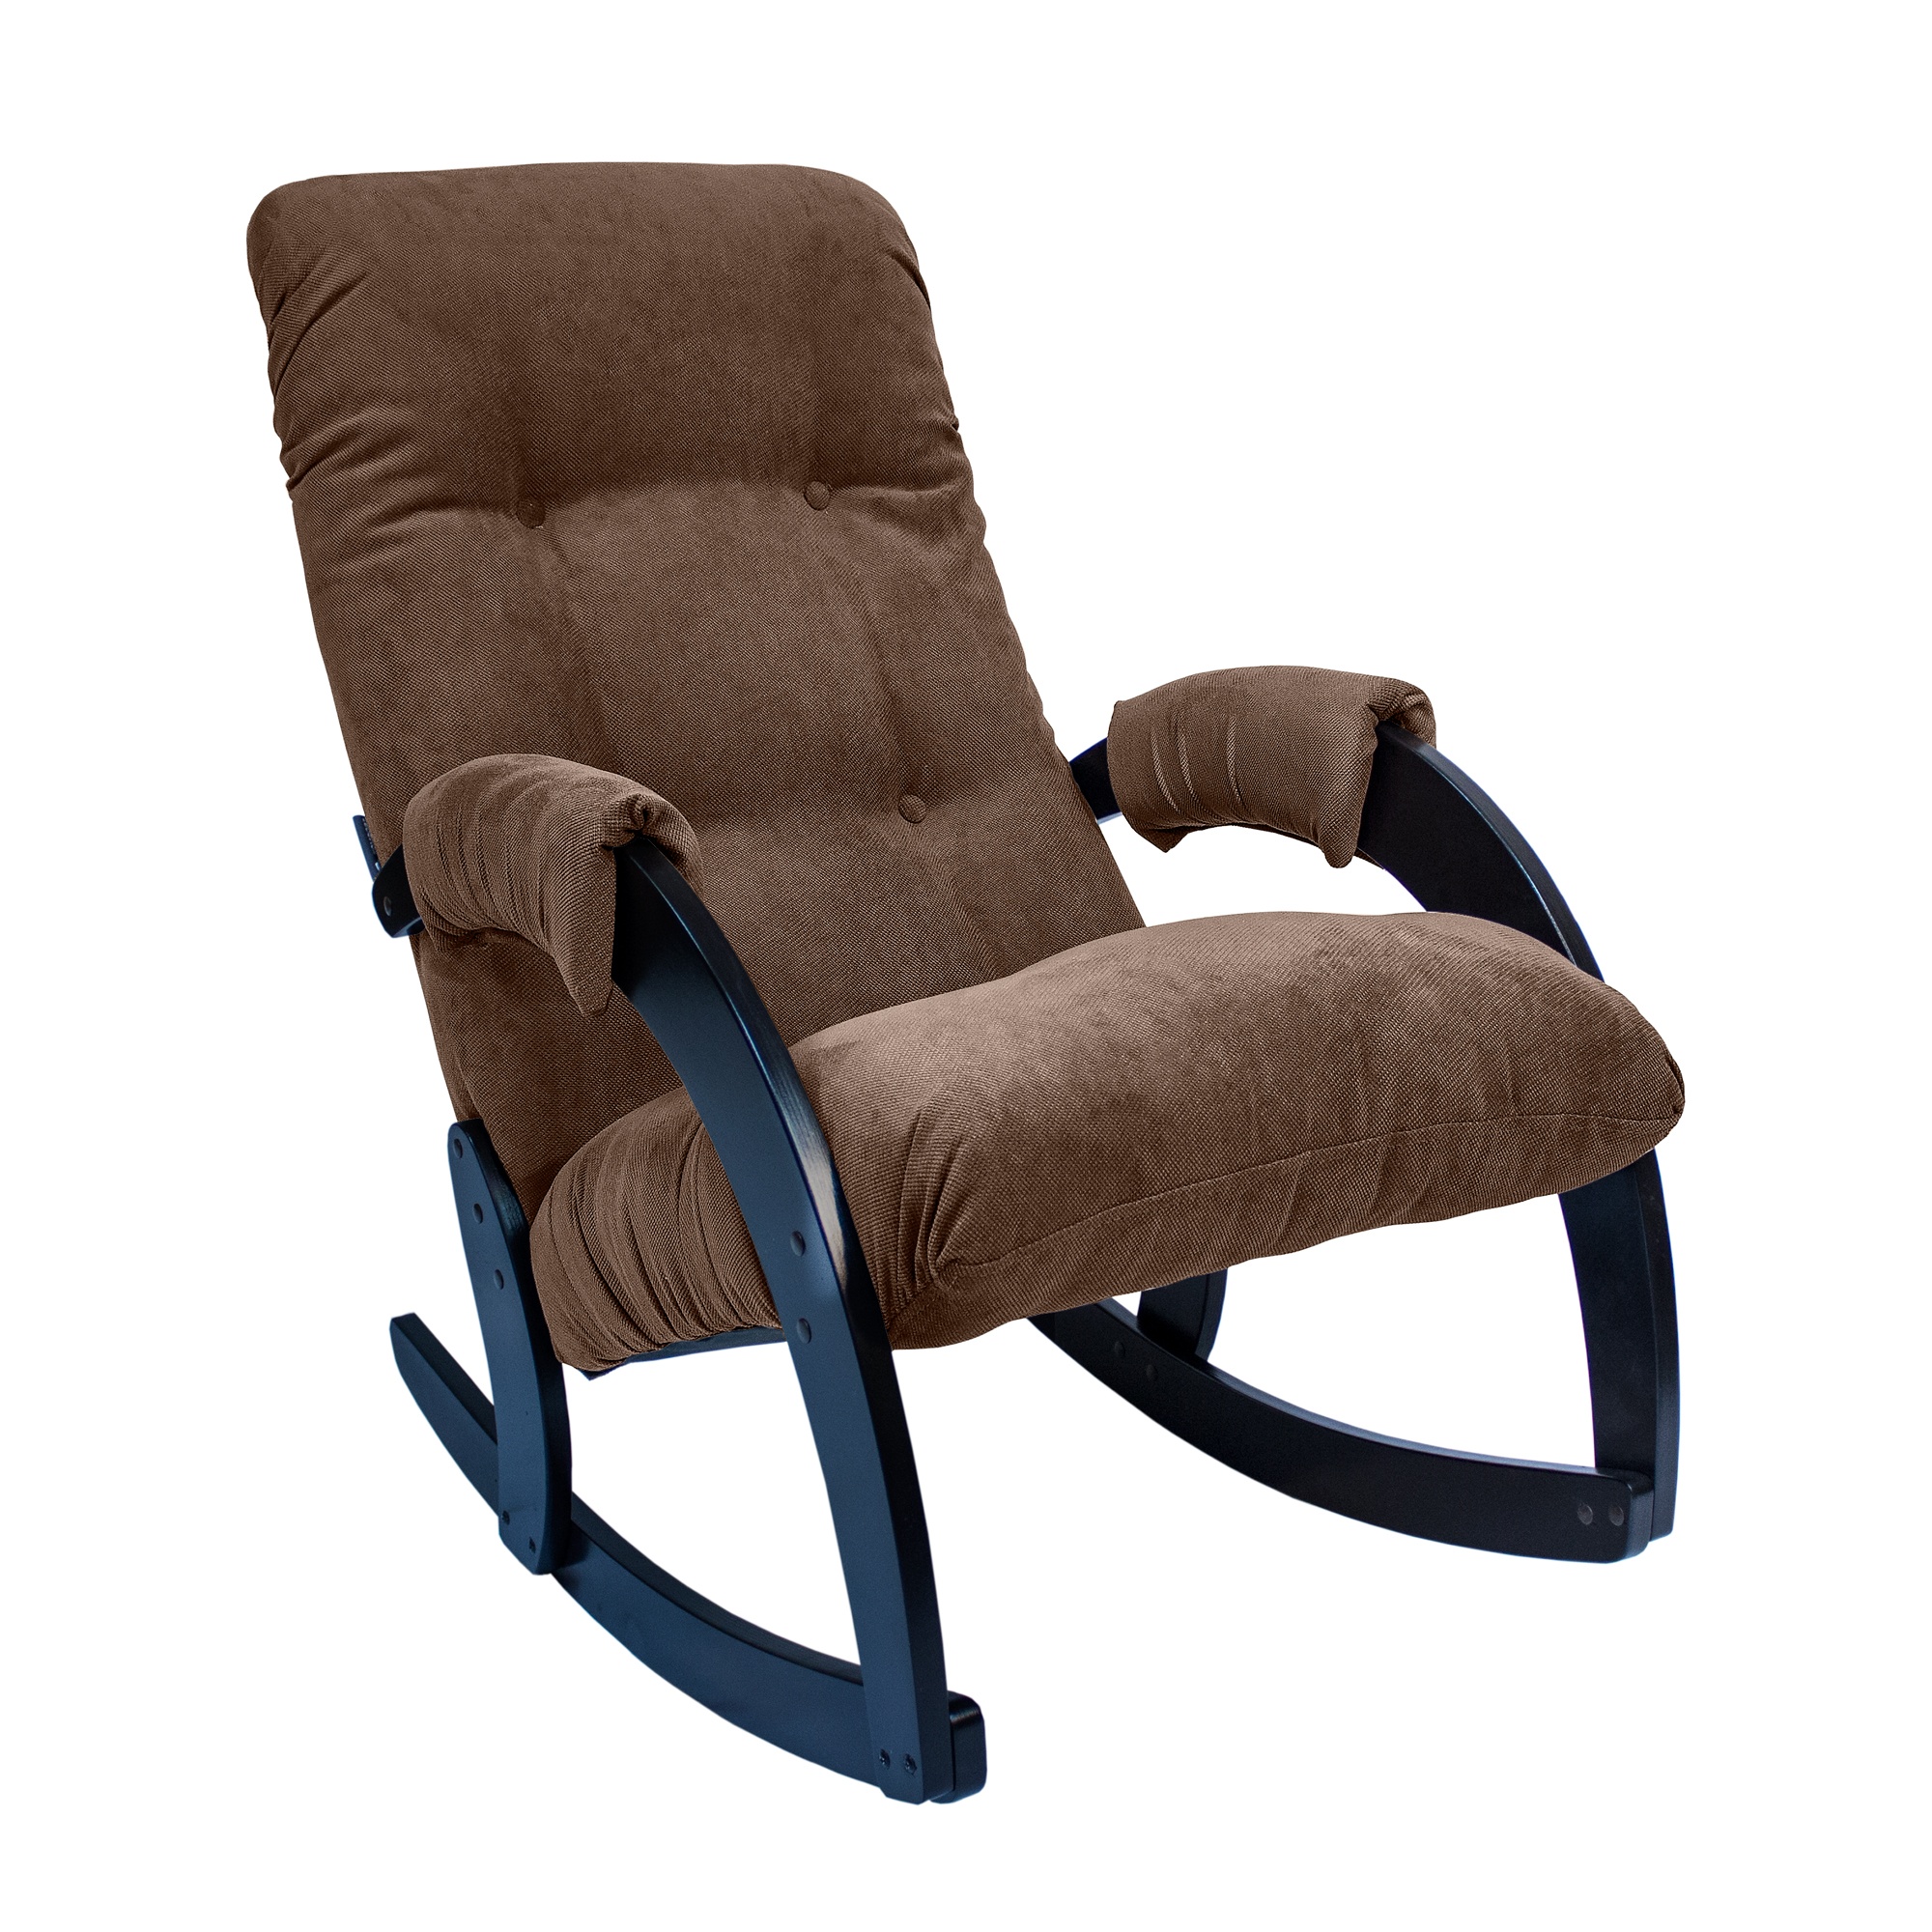 Кресло-качалка verona комфорт коричневый 60x87x103 см.